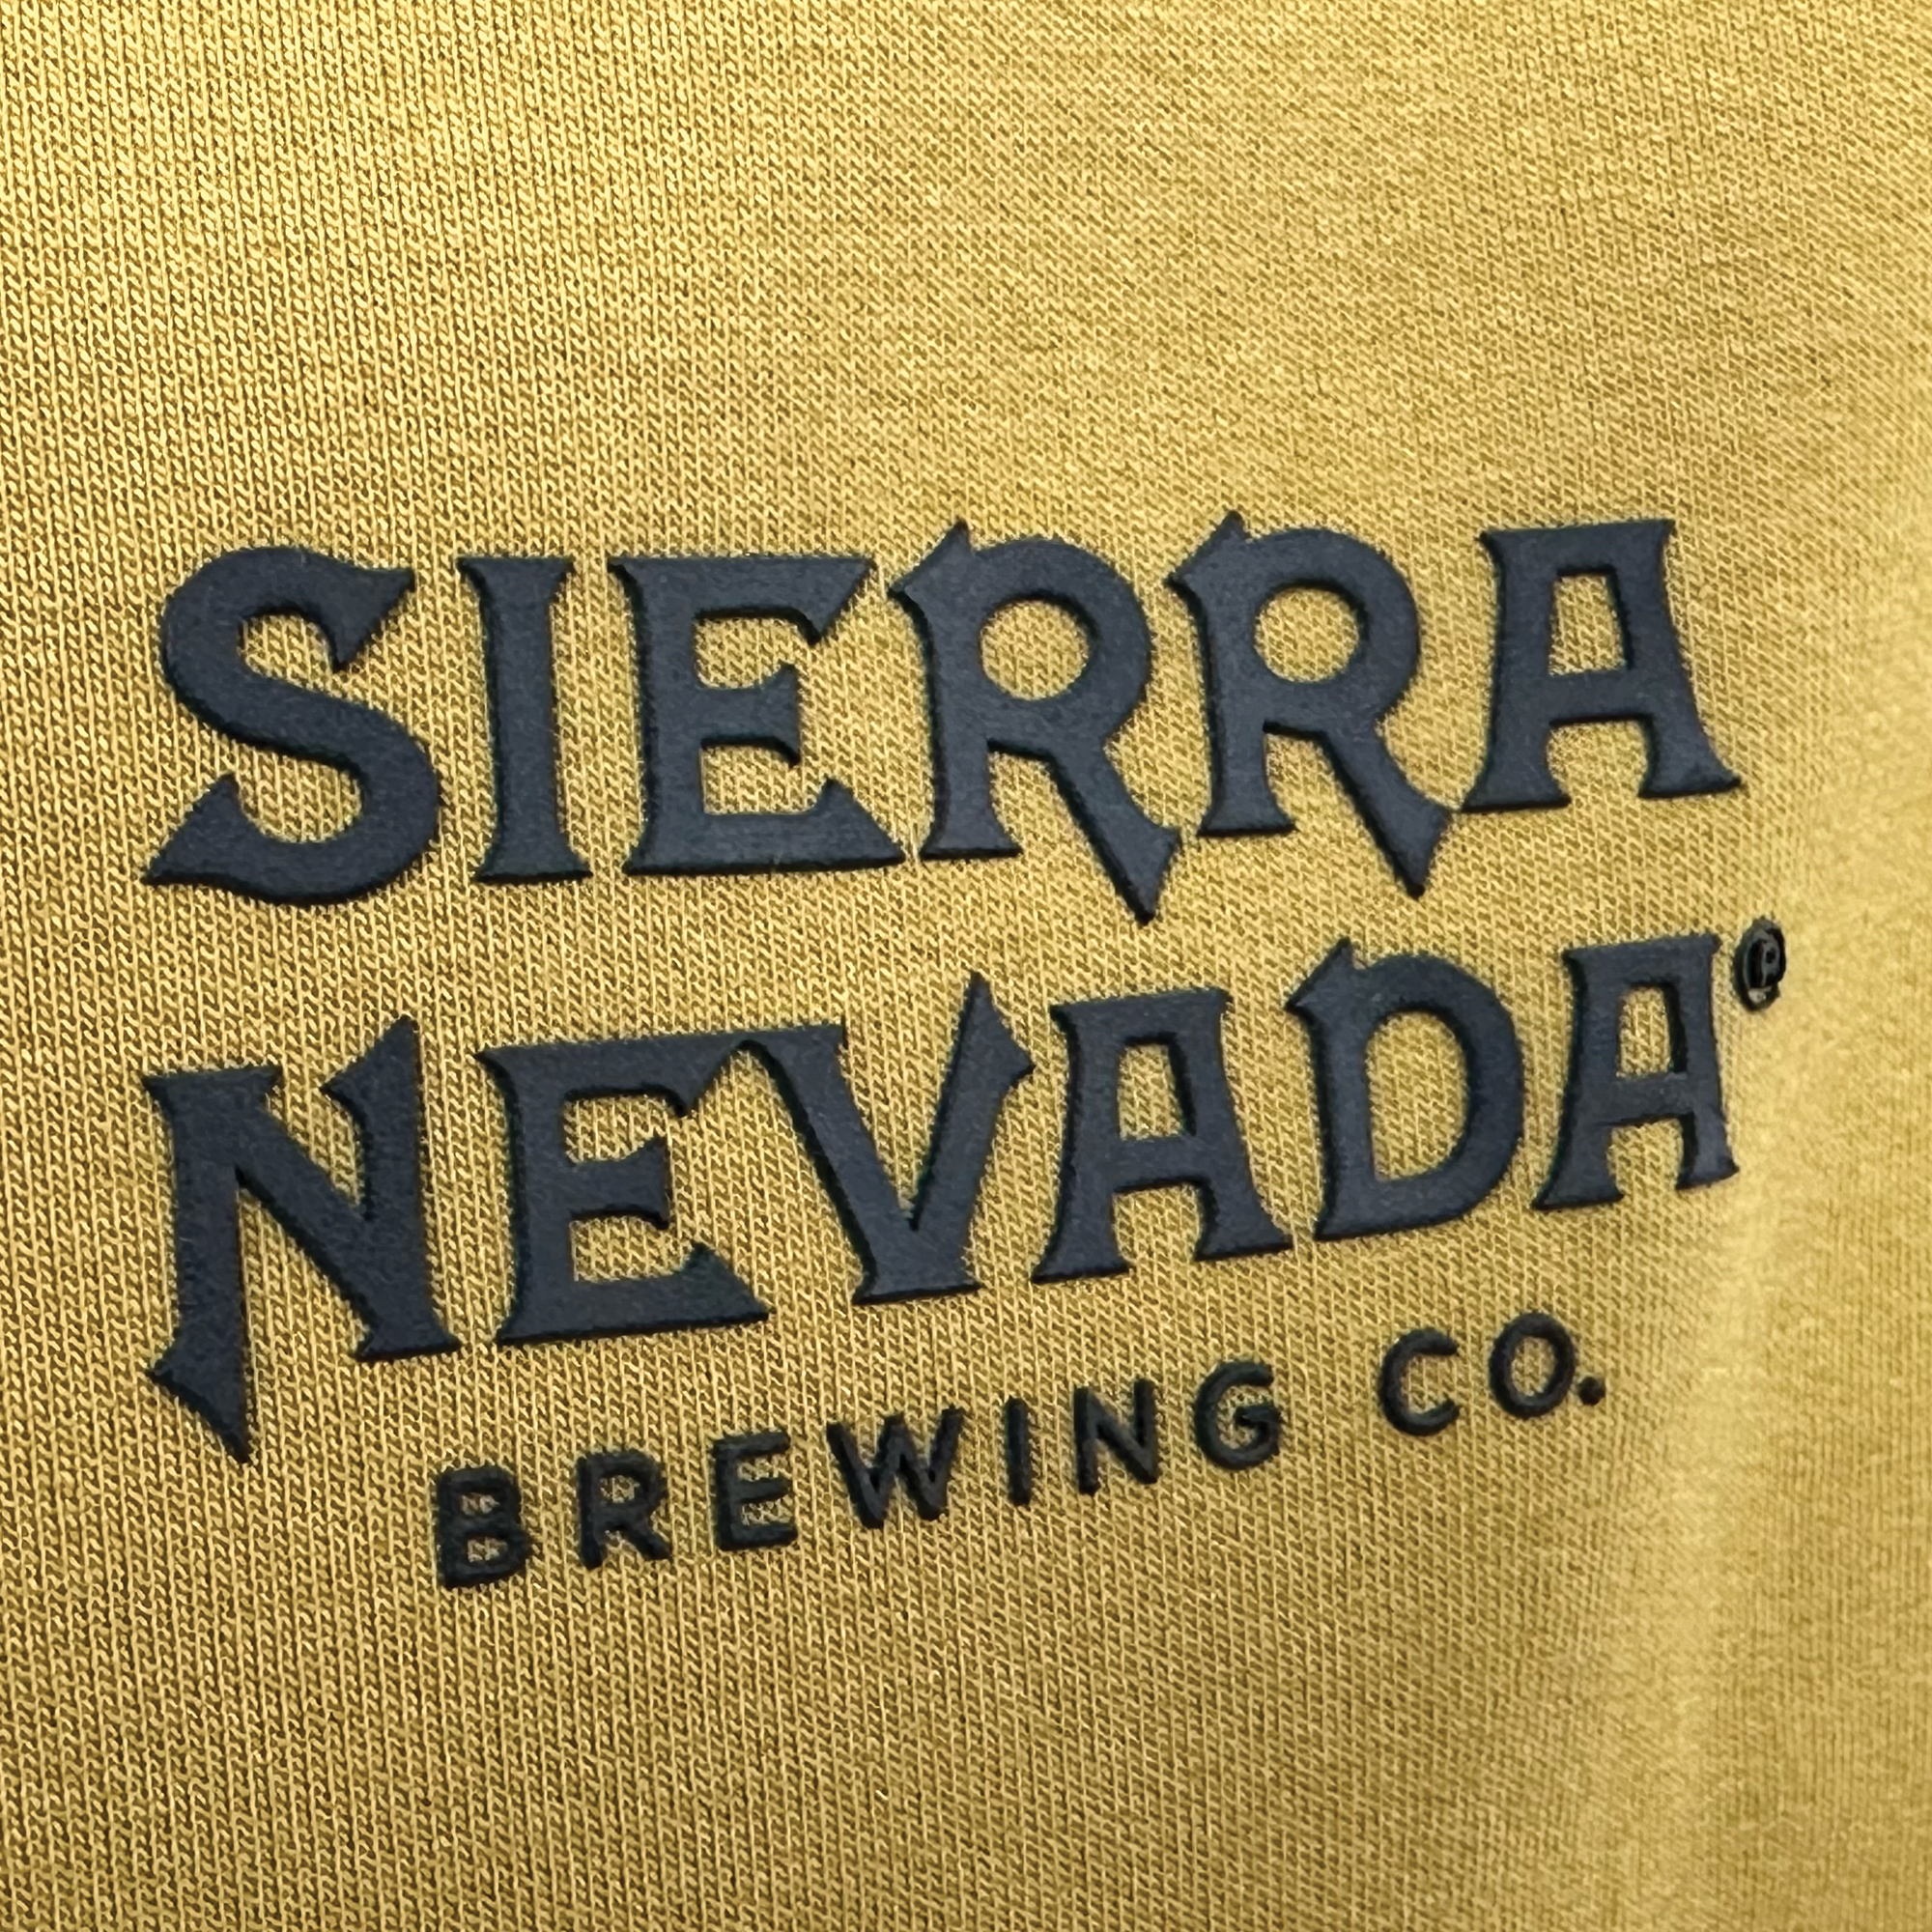 Sierra Nevada X ROVE Wordmark Zip Hoodie detail shot